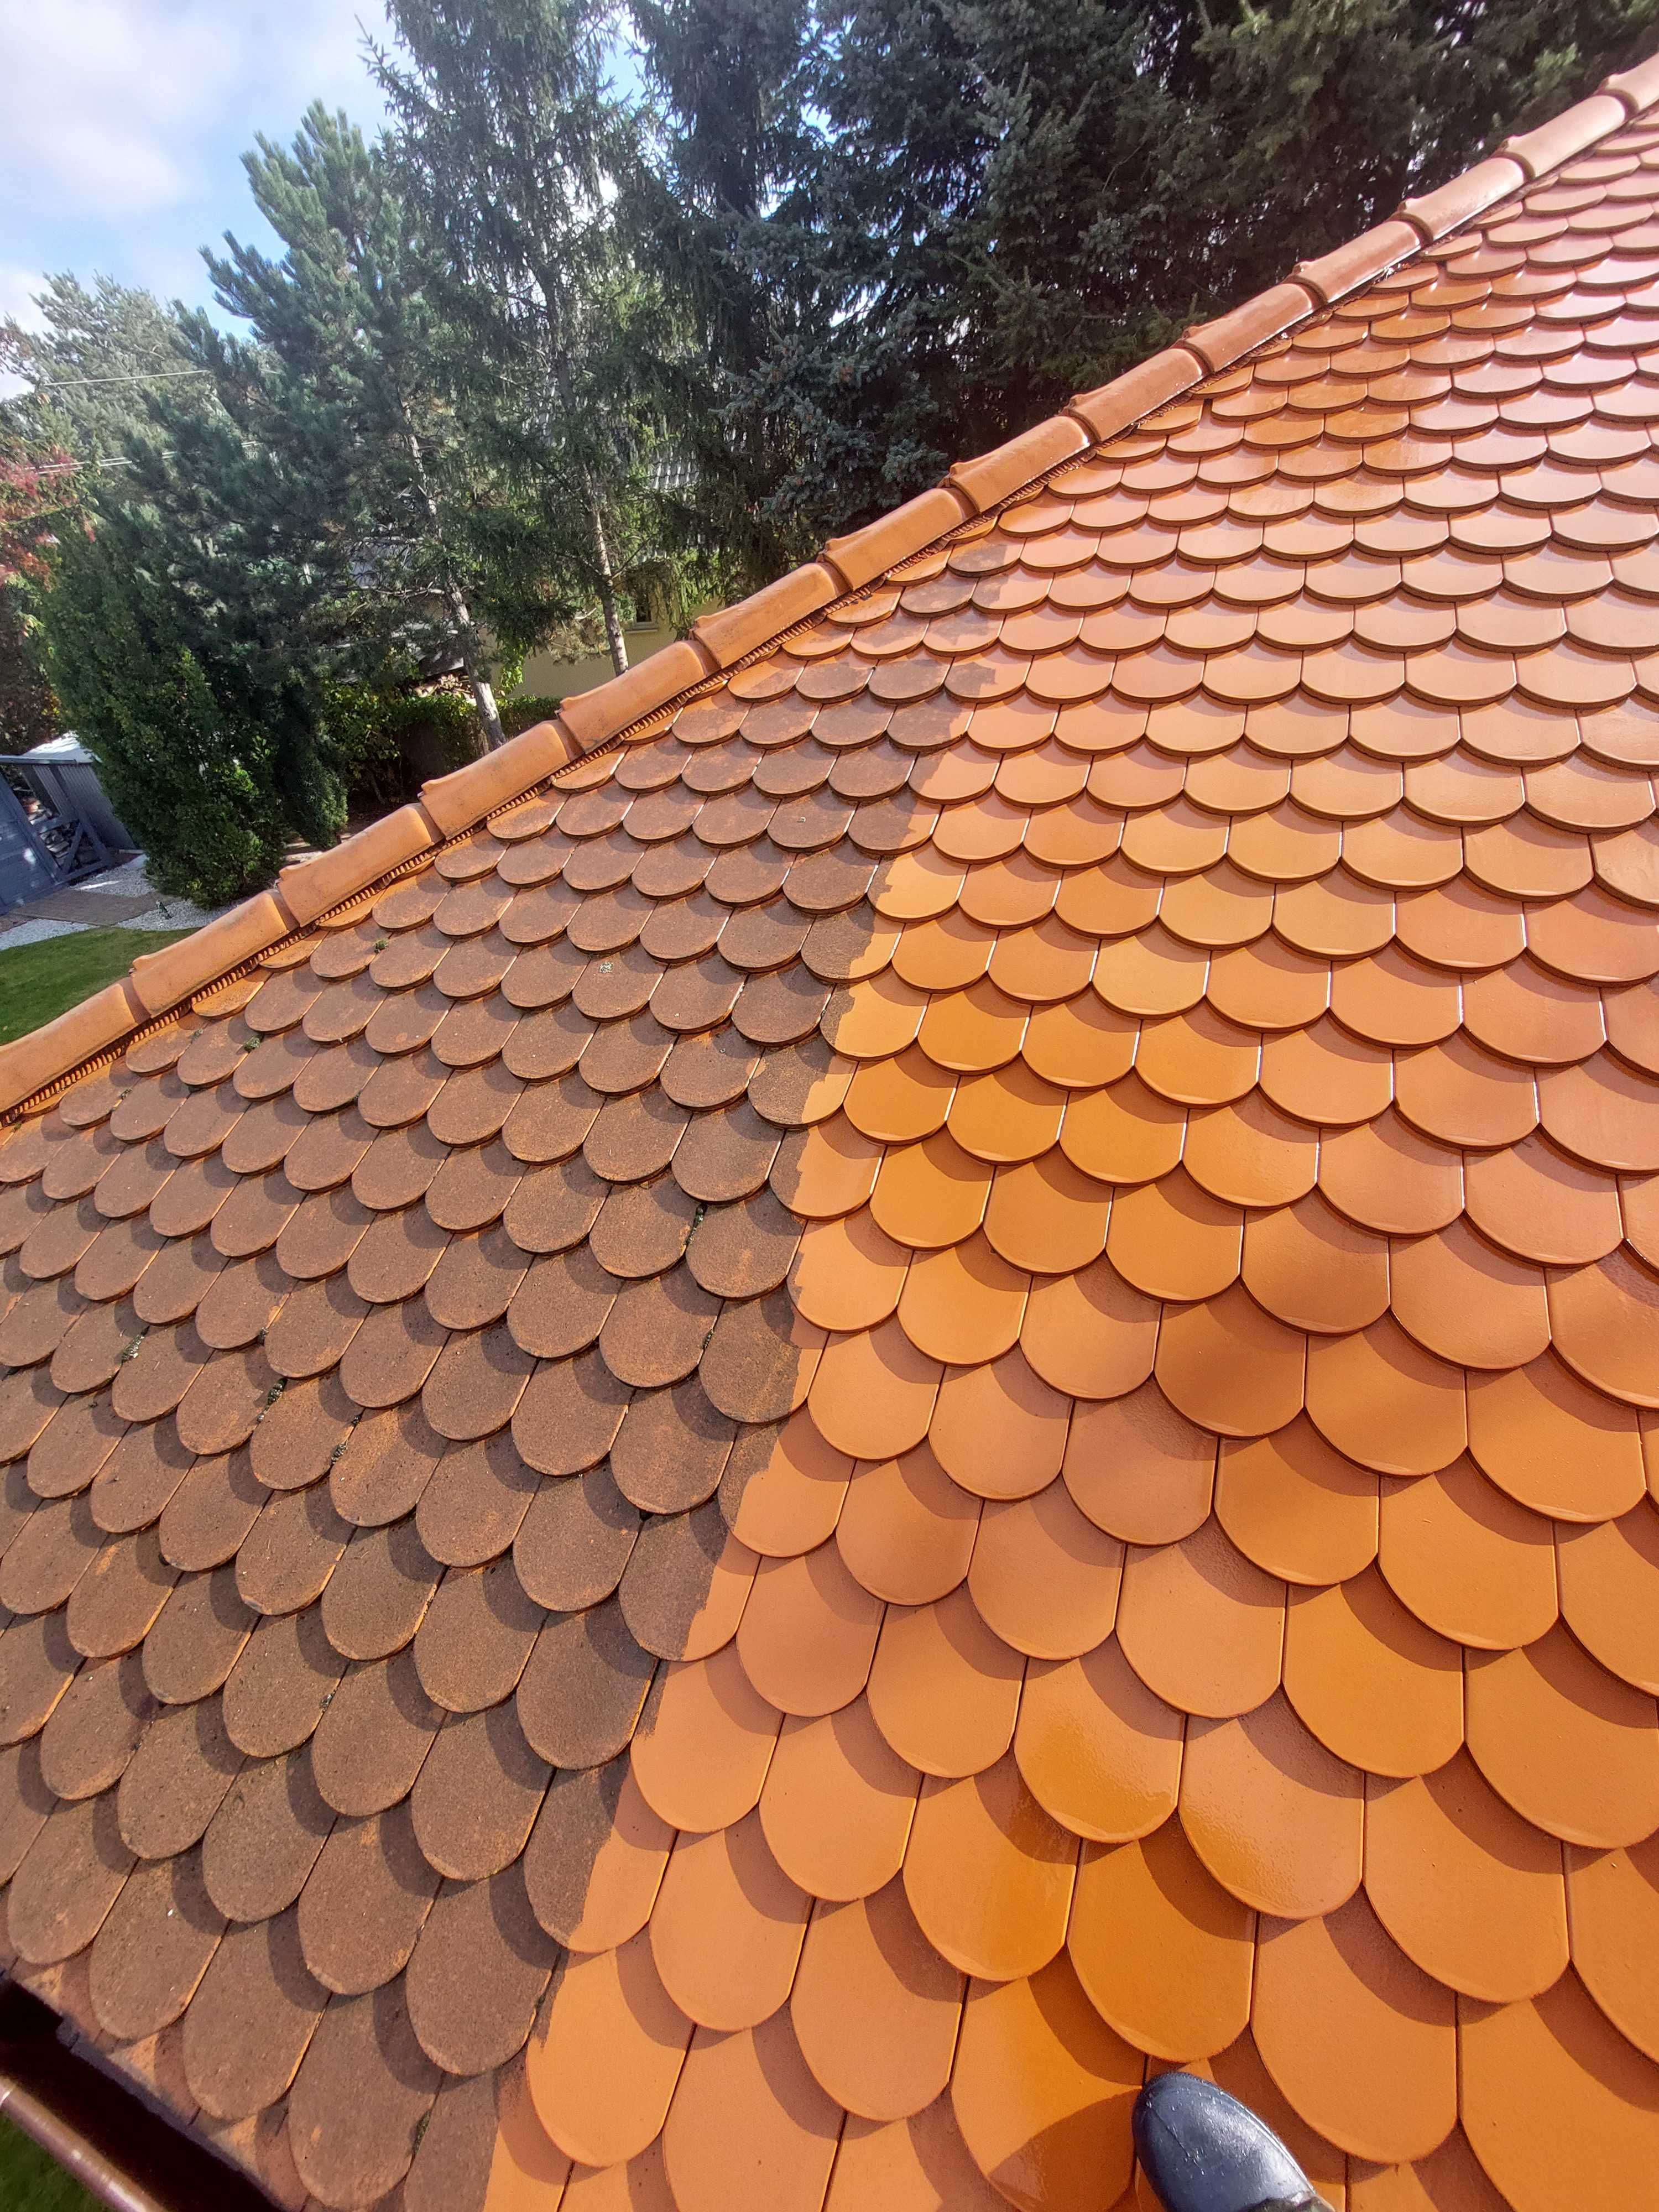 Mycie Dachów elewacji kostki brukowej malowanie dachu elewacji